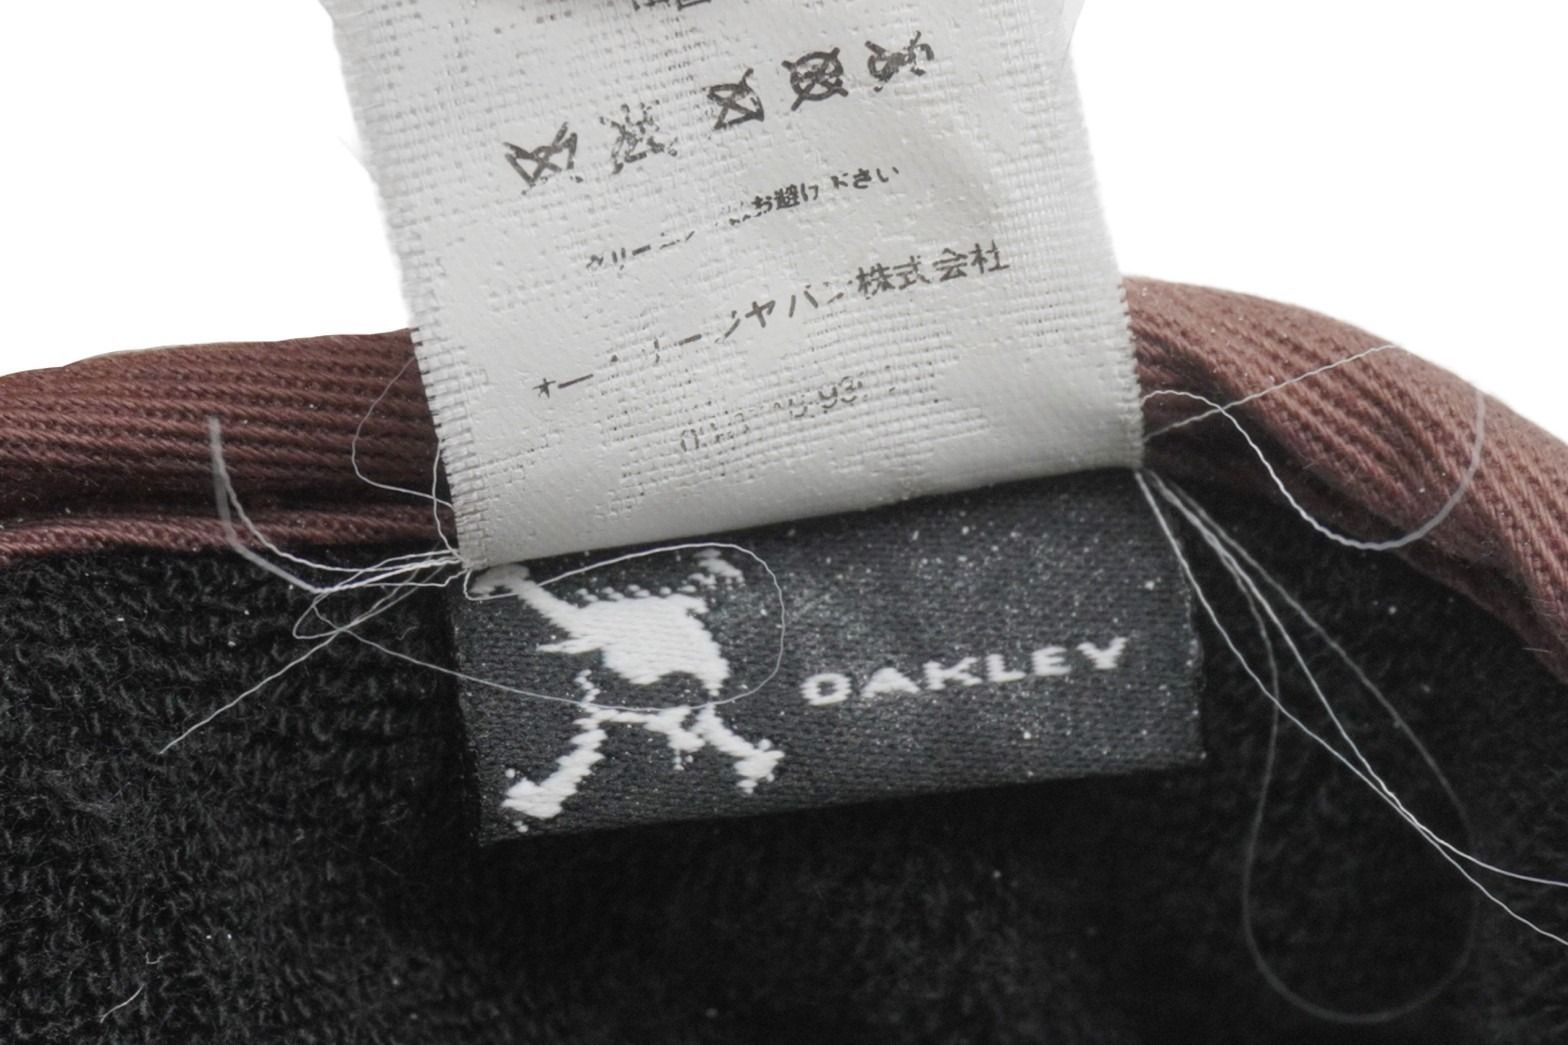 Oakley オークリー サンバイザー ロゴプレート 35460 中国製 コットン ベージュ ブラウン シルバー金具 良品 中古 52022